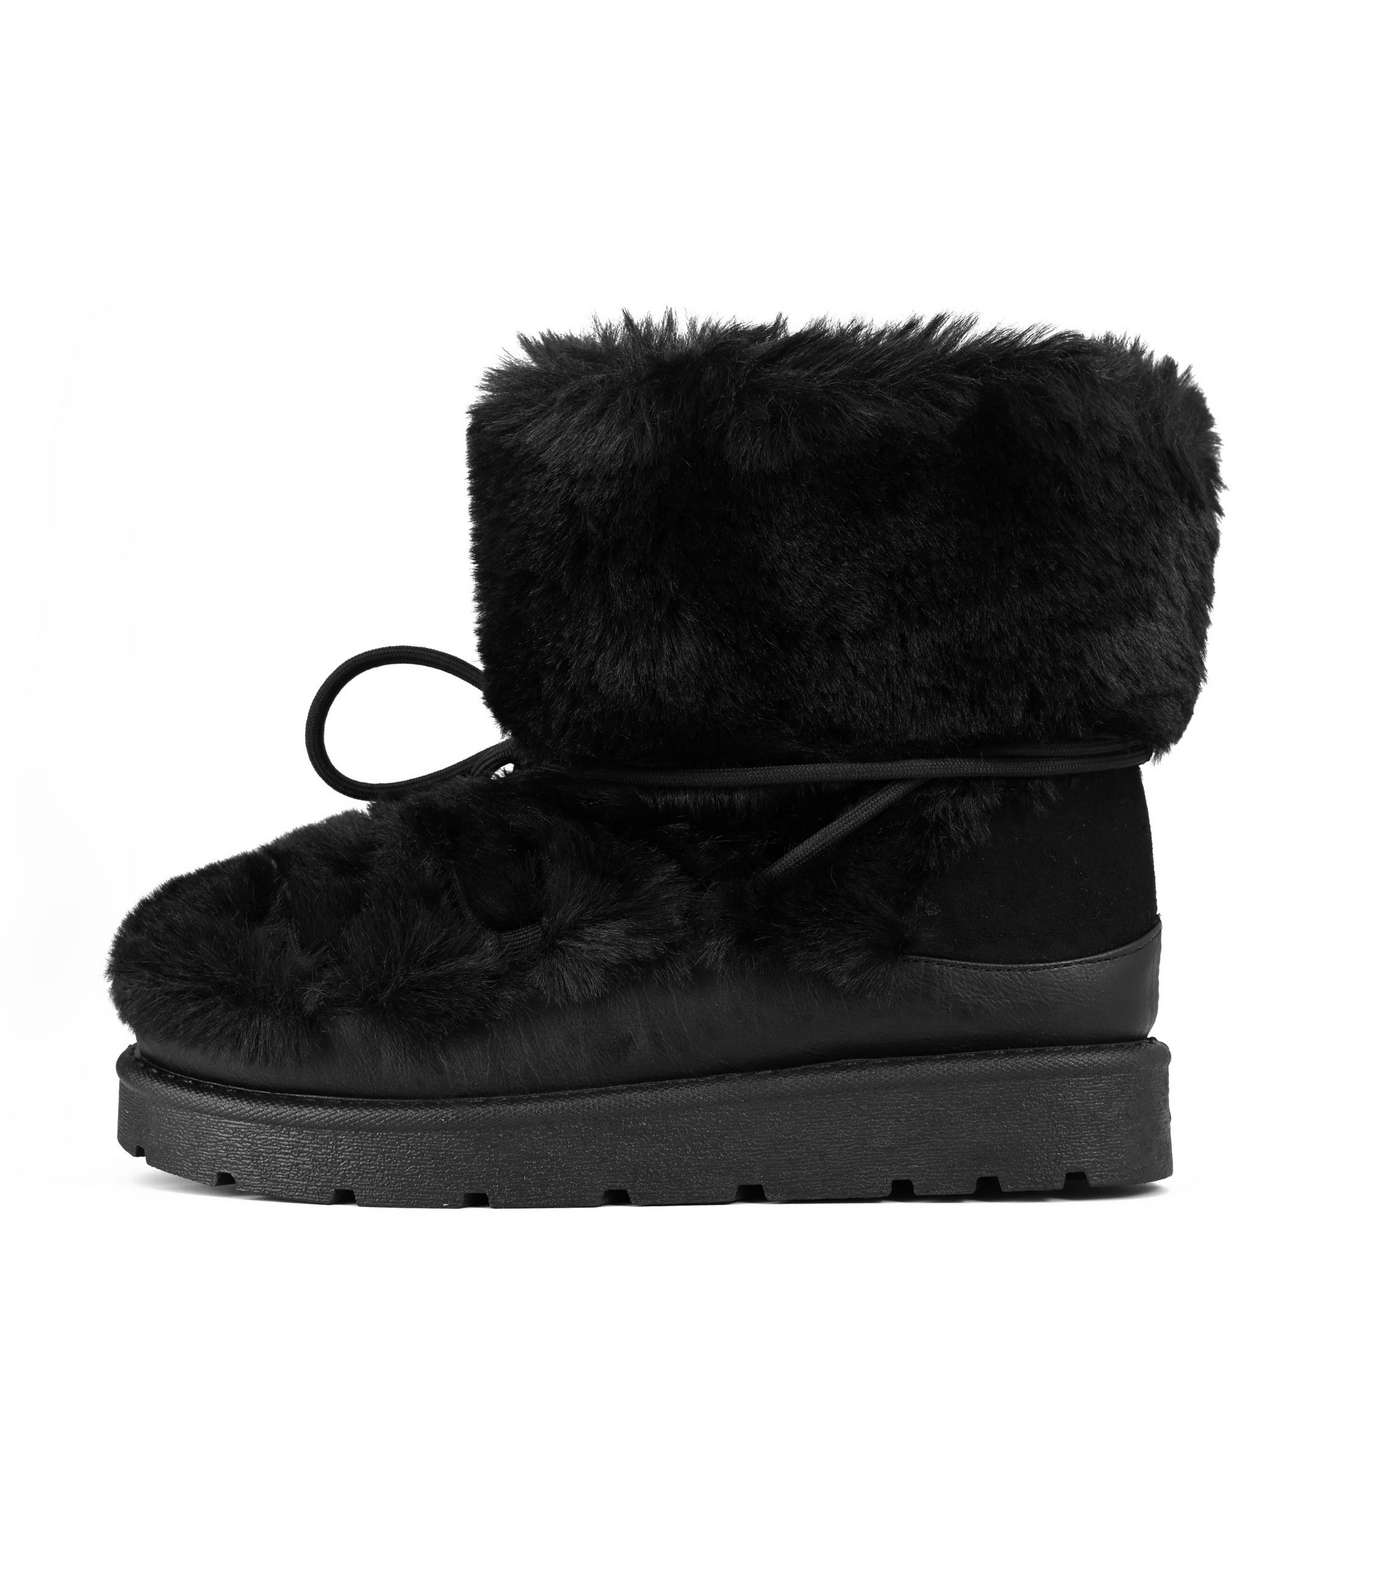 South Beach Black Faux Fur Lace Up Snow Boots Image 2